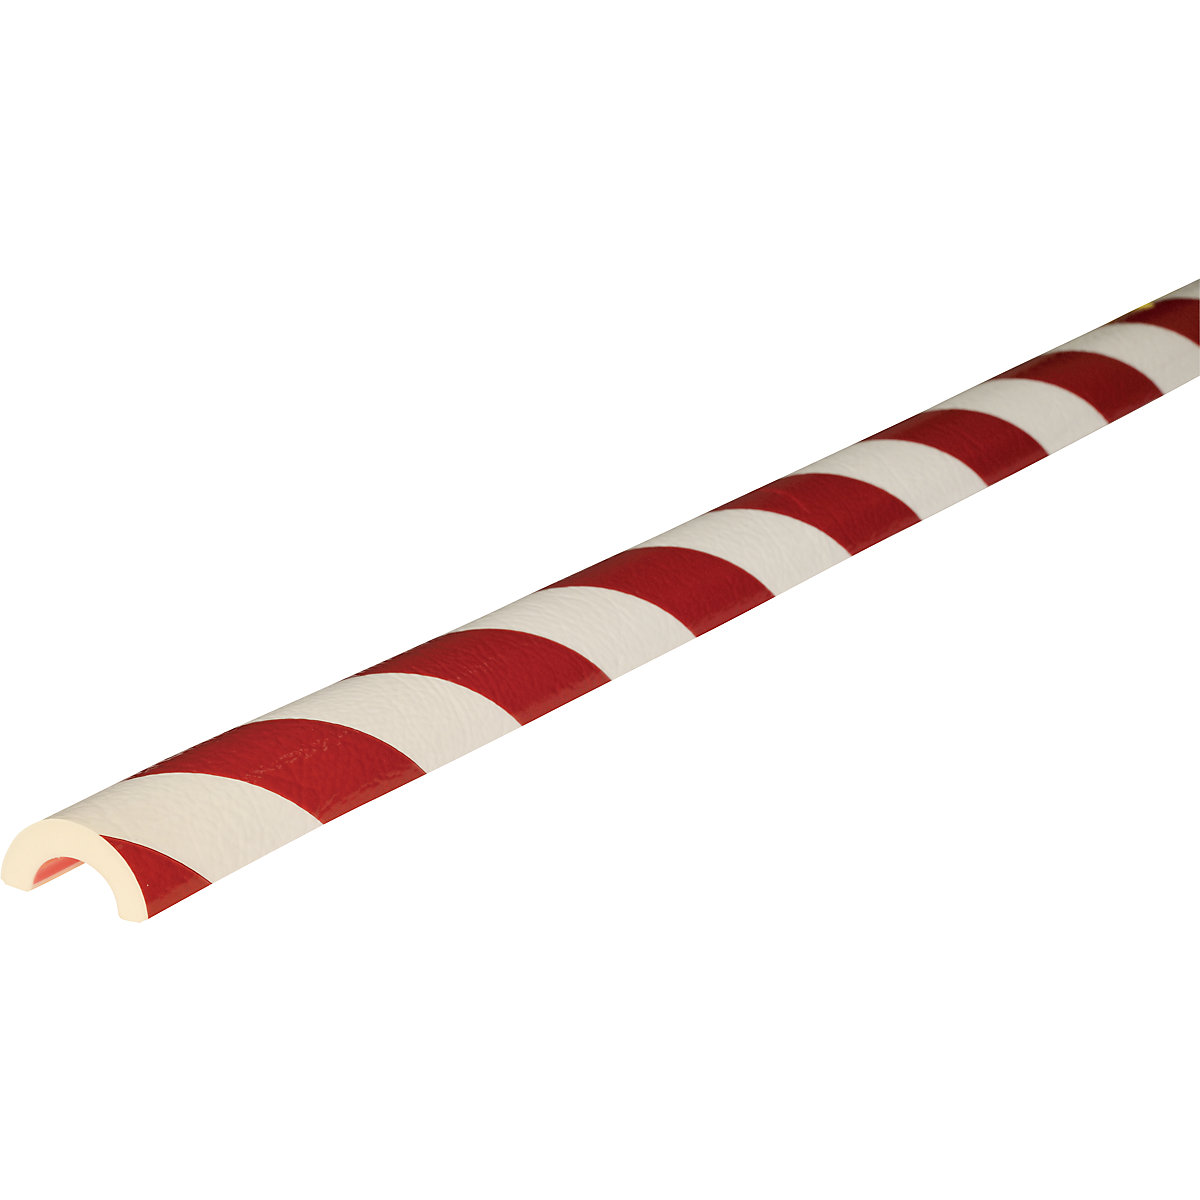 Protection des tuyaux Knuffi® – SHG, type R30, découpe au mètre linéaire, rouge / blanc